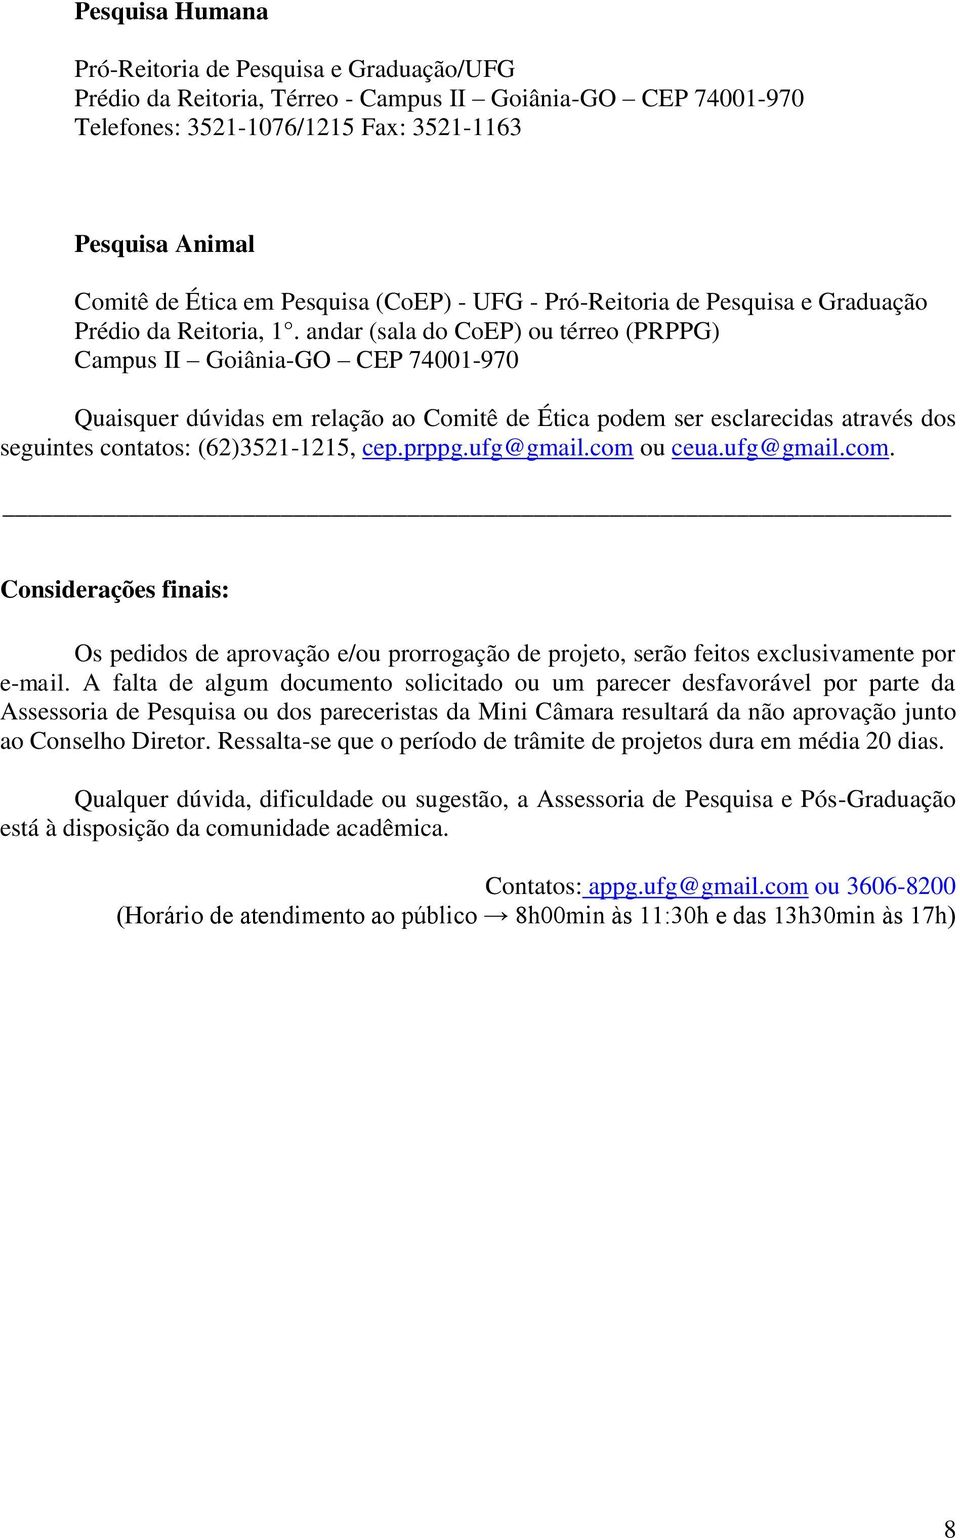 andar (sala do CoEP) ou térreo (PRPPG) Campus II Goiânia-GO CEP 74001-970 Quaisquer dúvidas em relação ao Comitê de Ética podem ser esclarecidas através dos seguintes contatos: (62)3521-1215, cep.